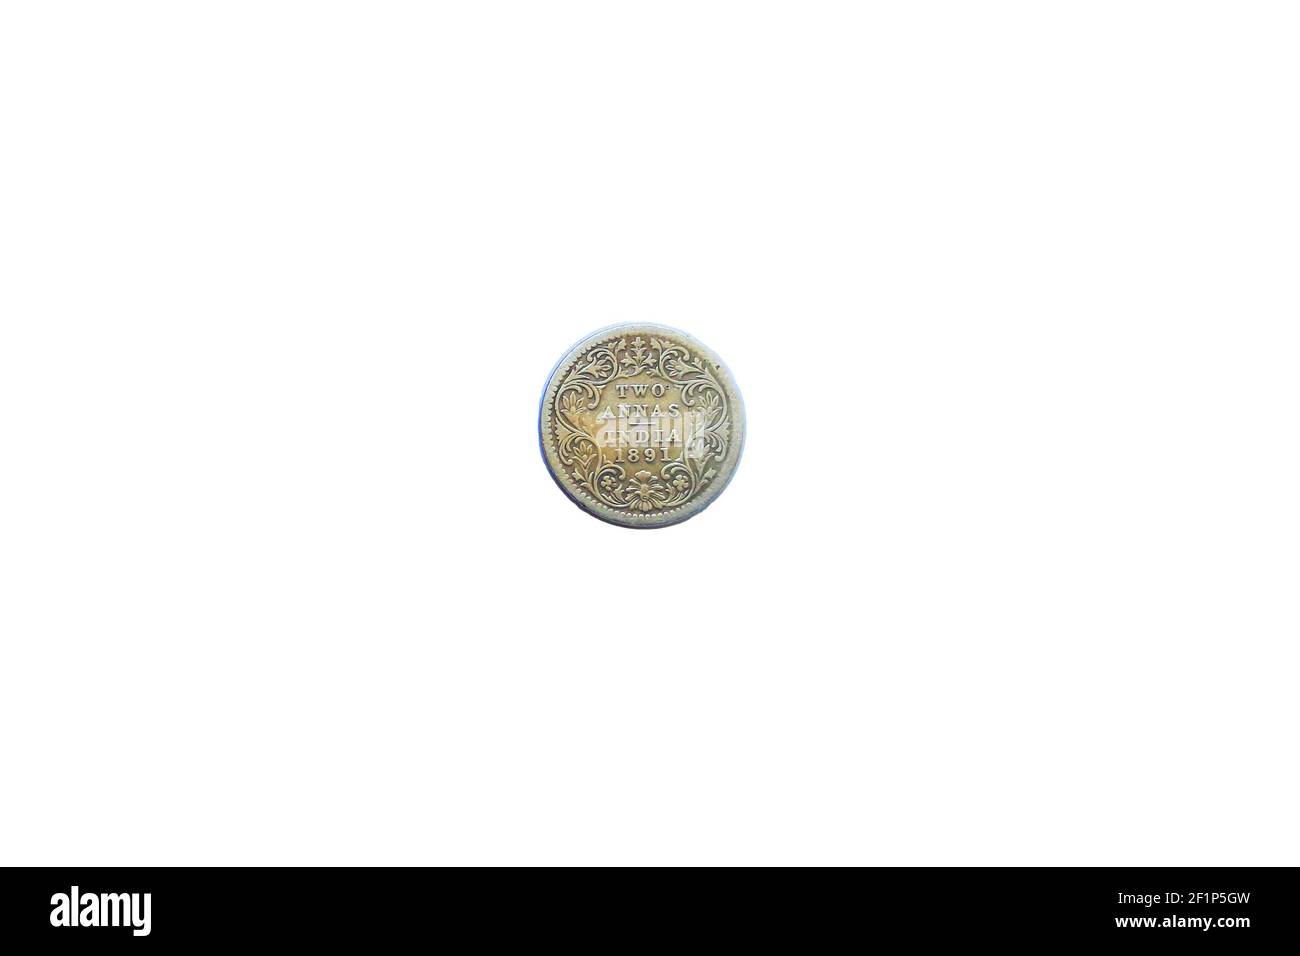 due annas victoria imperano moneta d'argento british india Foto Stock